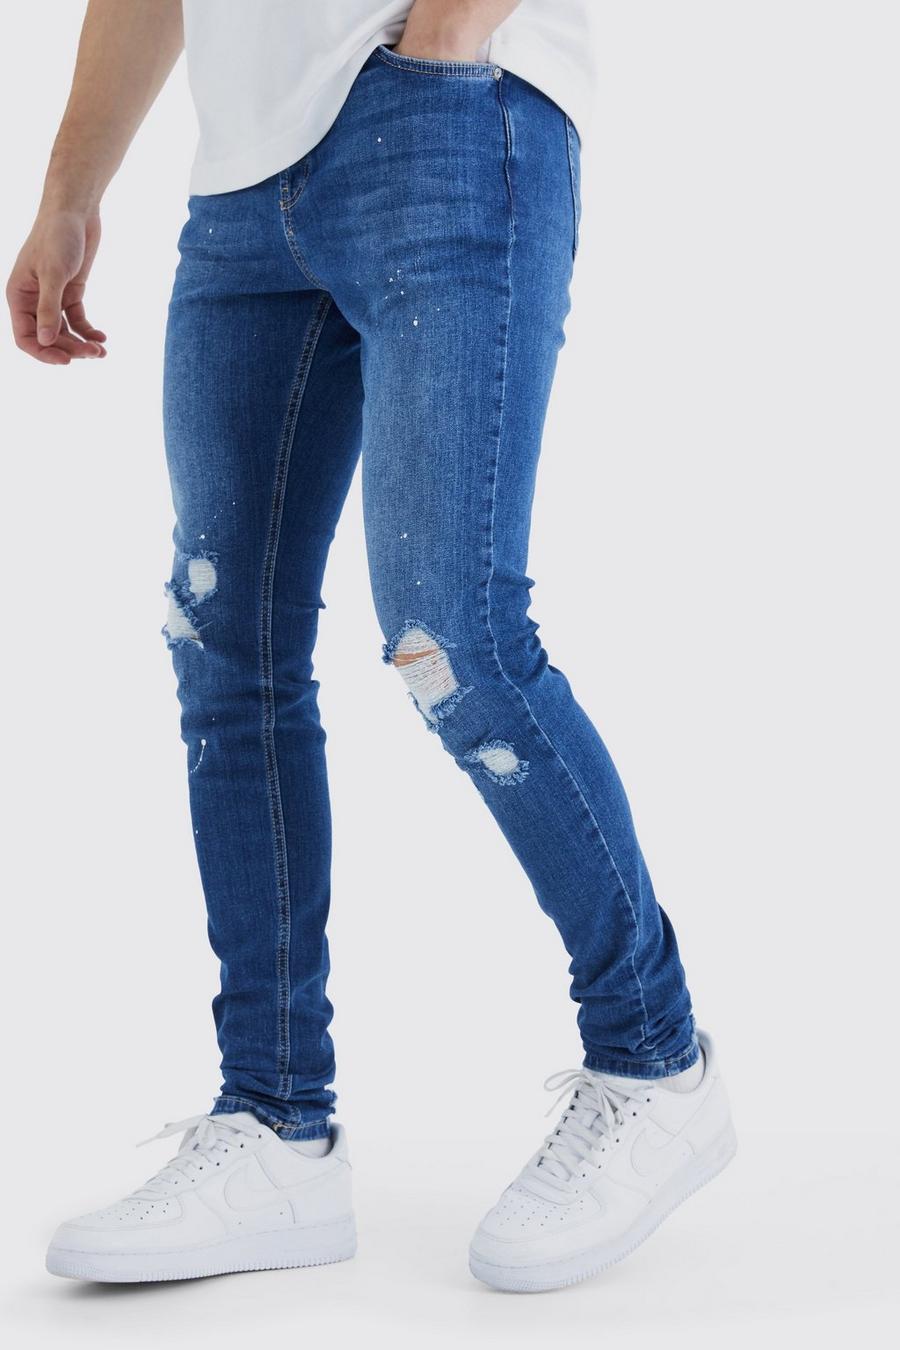 Jeans Tall Skinny Fit in Stretch con strappi sul ginocchio e schizzi di colore, Mid blue